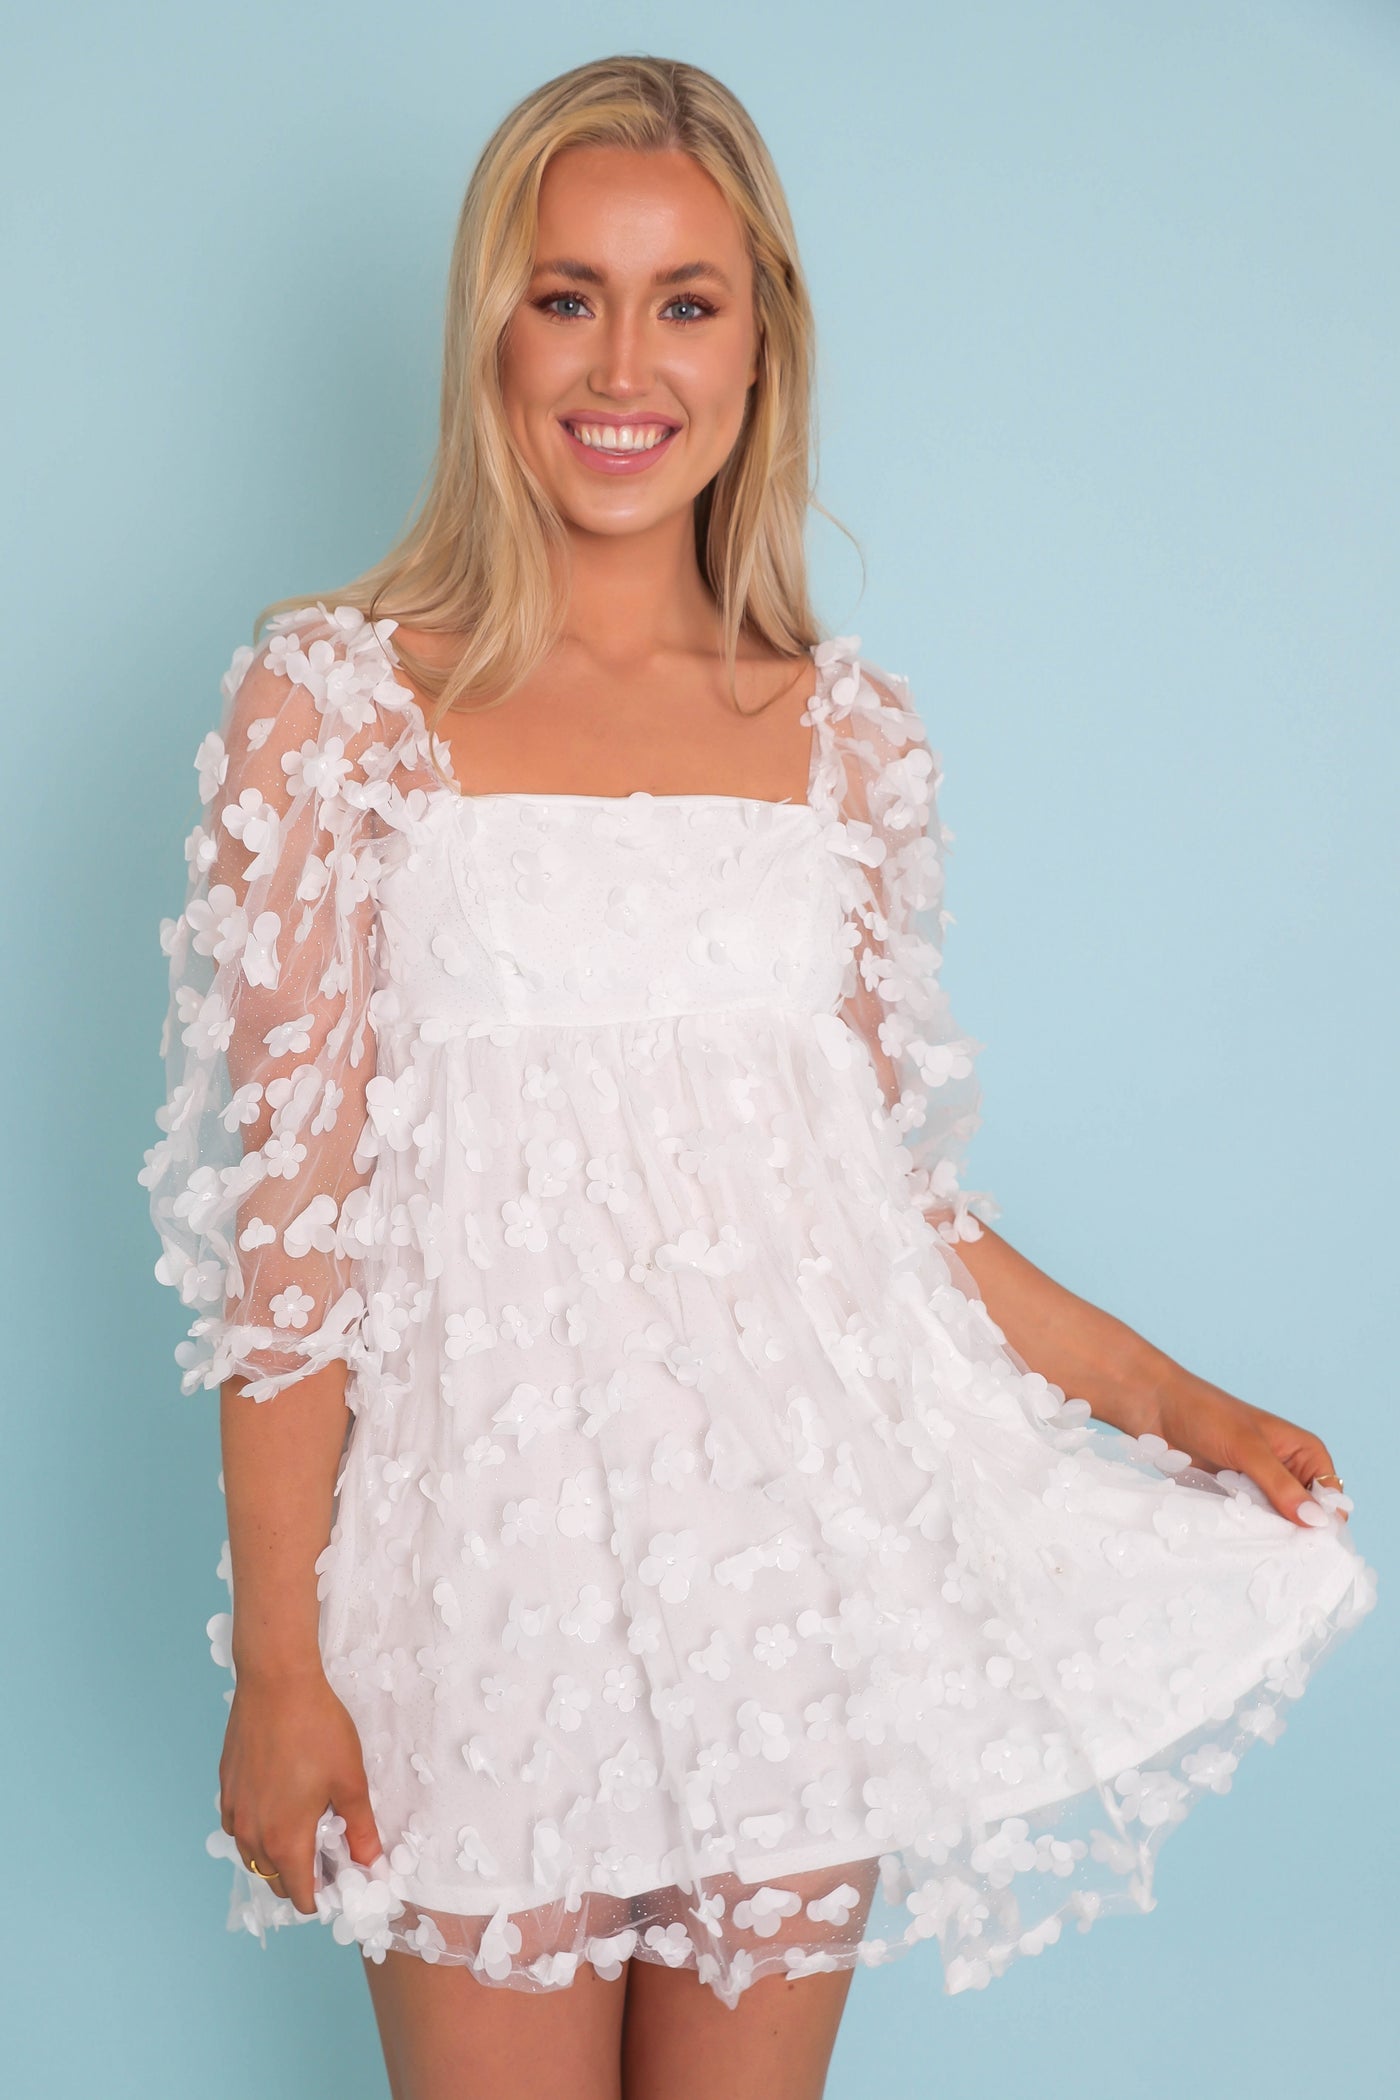 White Flower Glitter Dress- Women's Babydoll White Dress- 3D Flower Dress